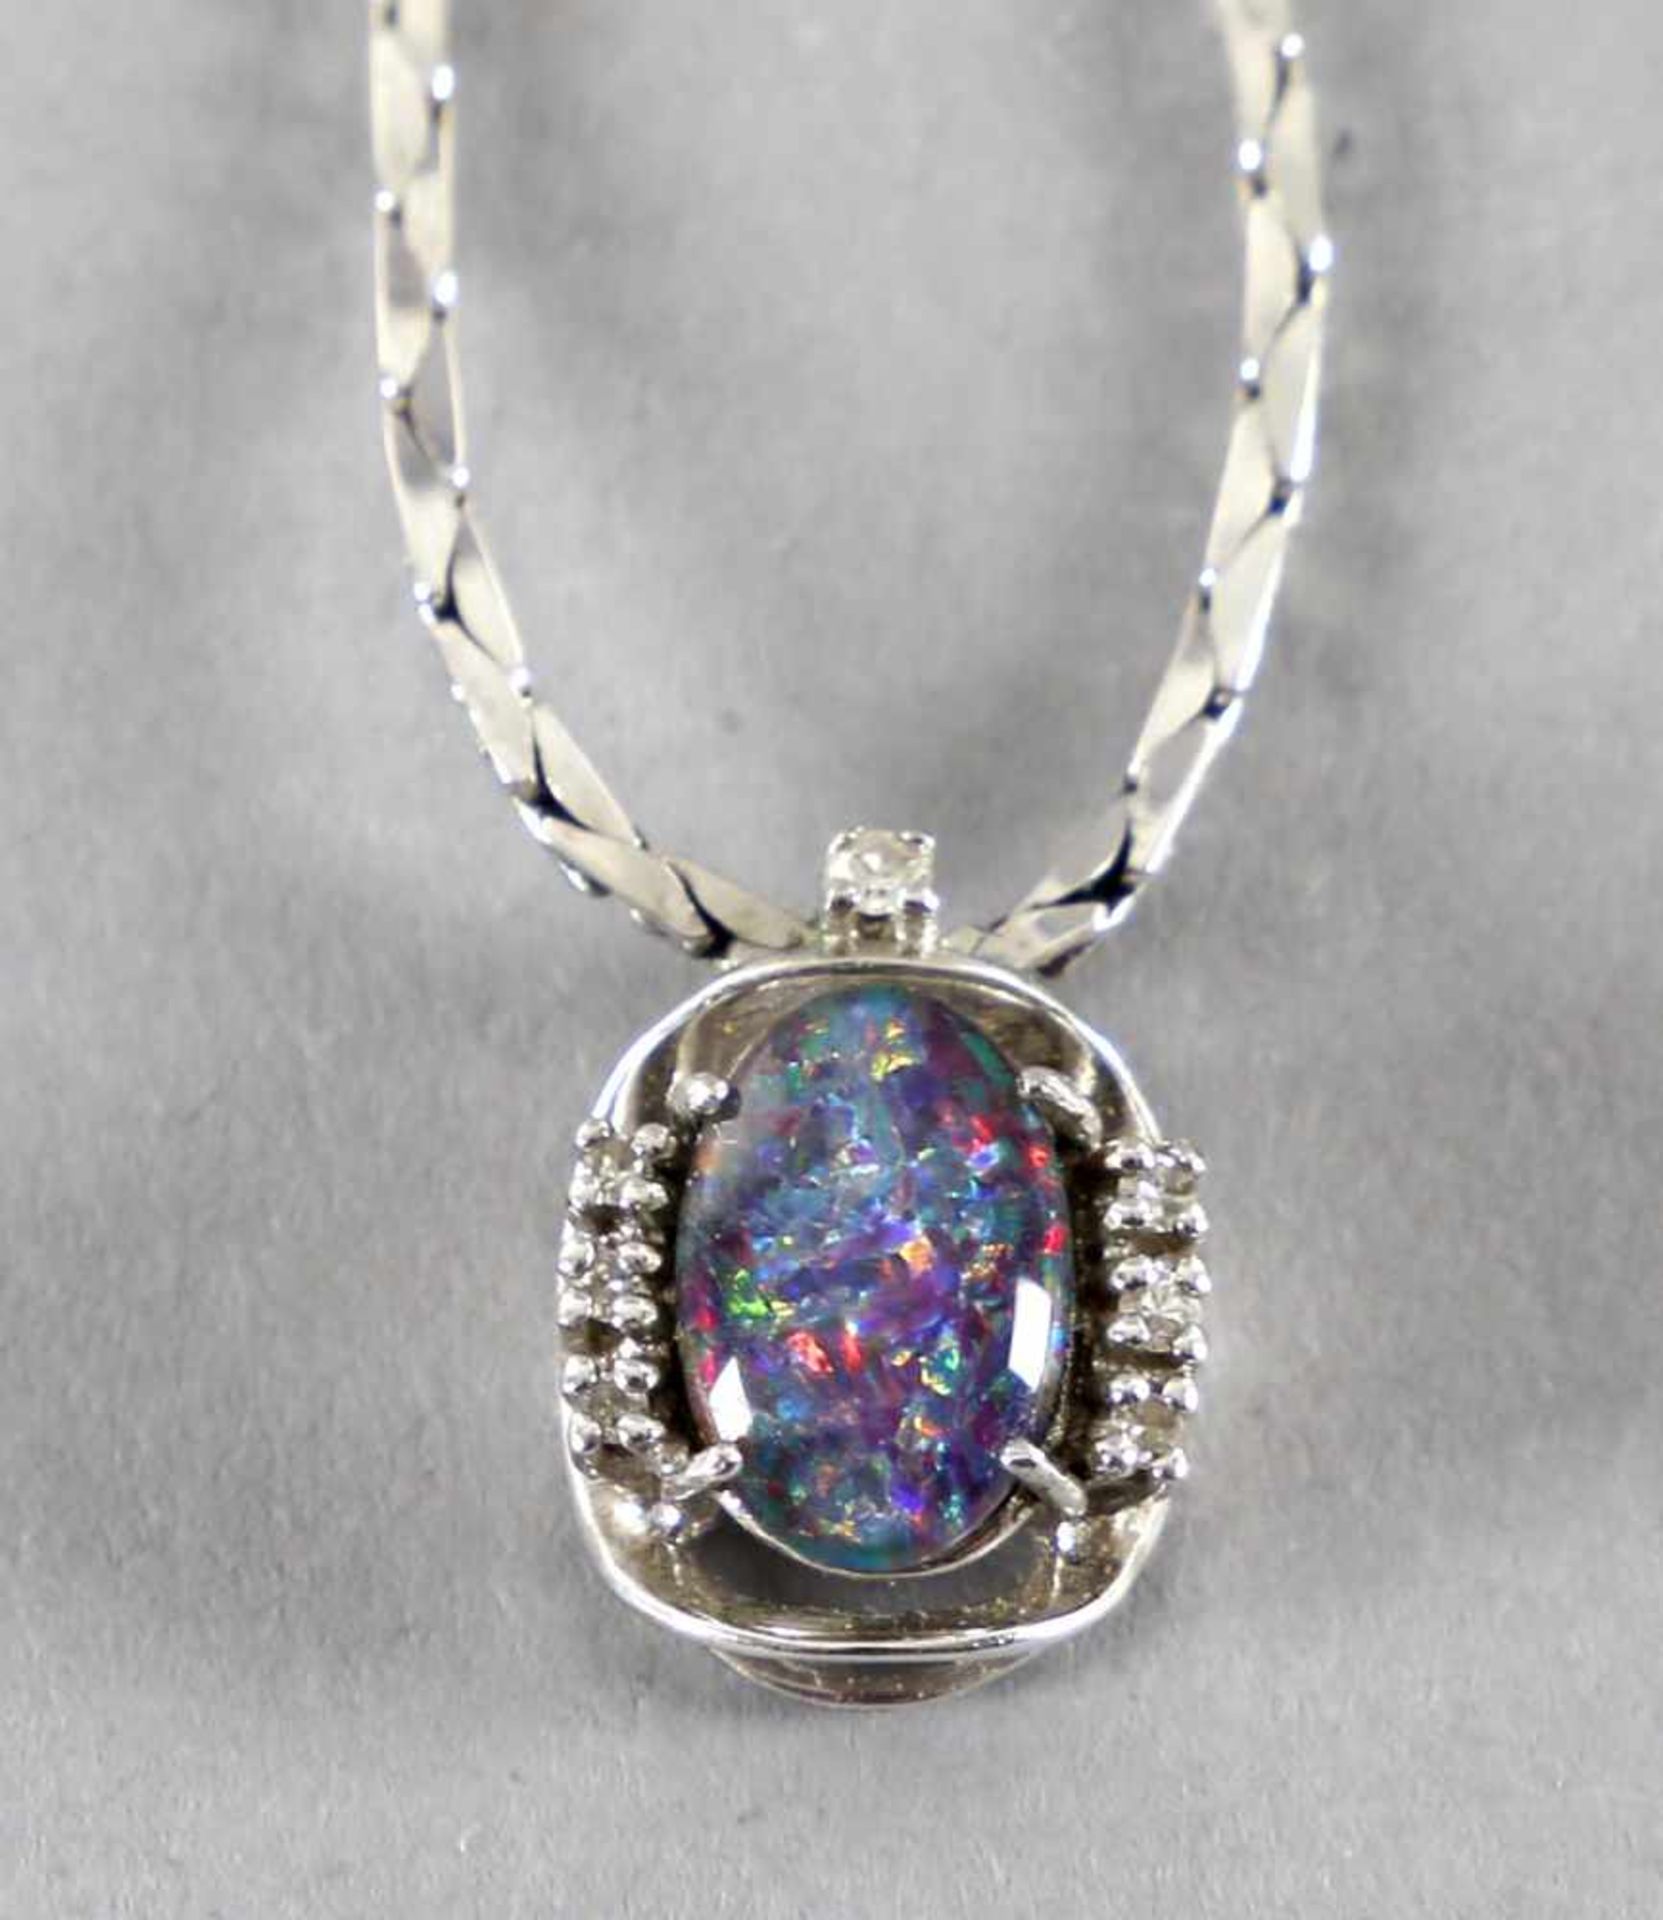 Halskette aus 585er WG mit Opalfeine flach gearbeitete Kette aus kleinen Einzelgliedern in